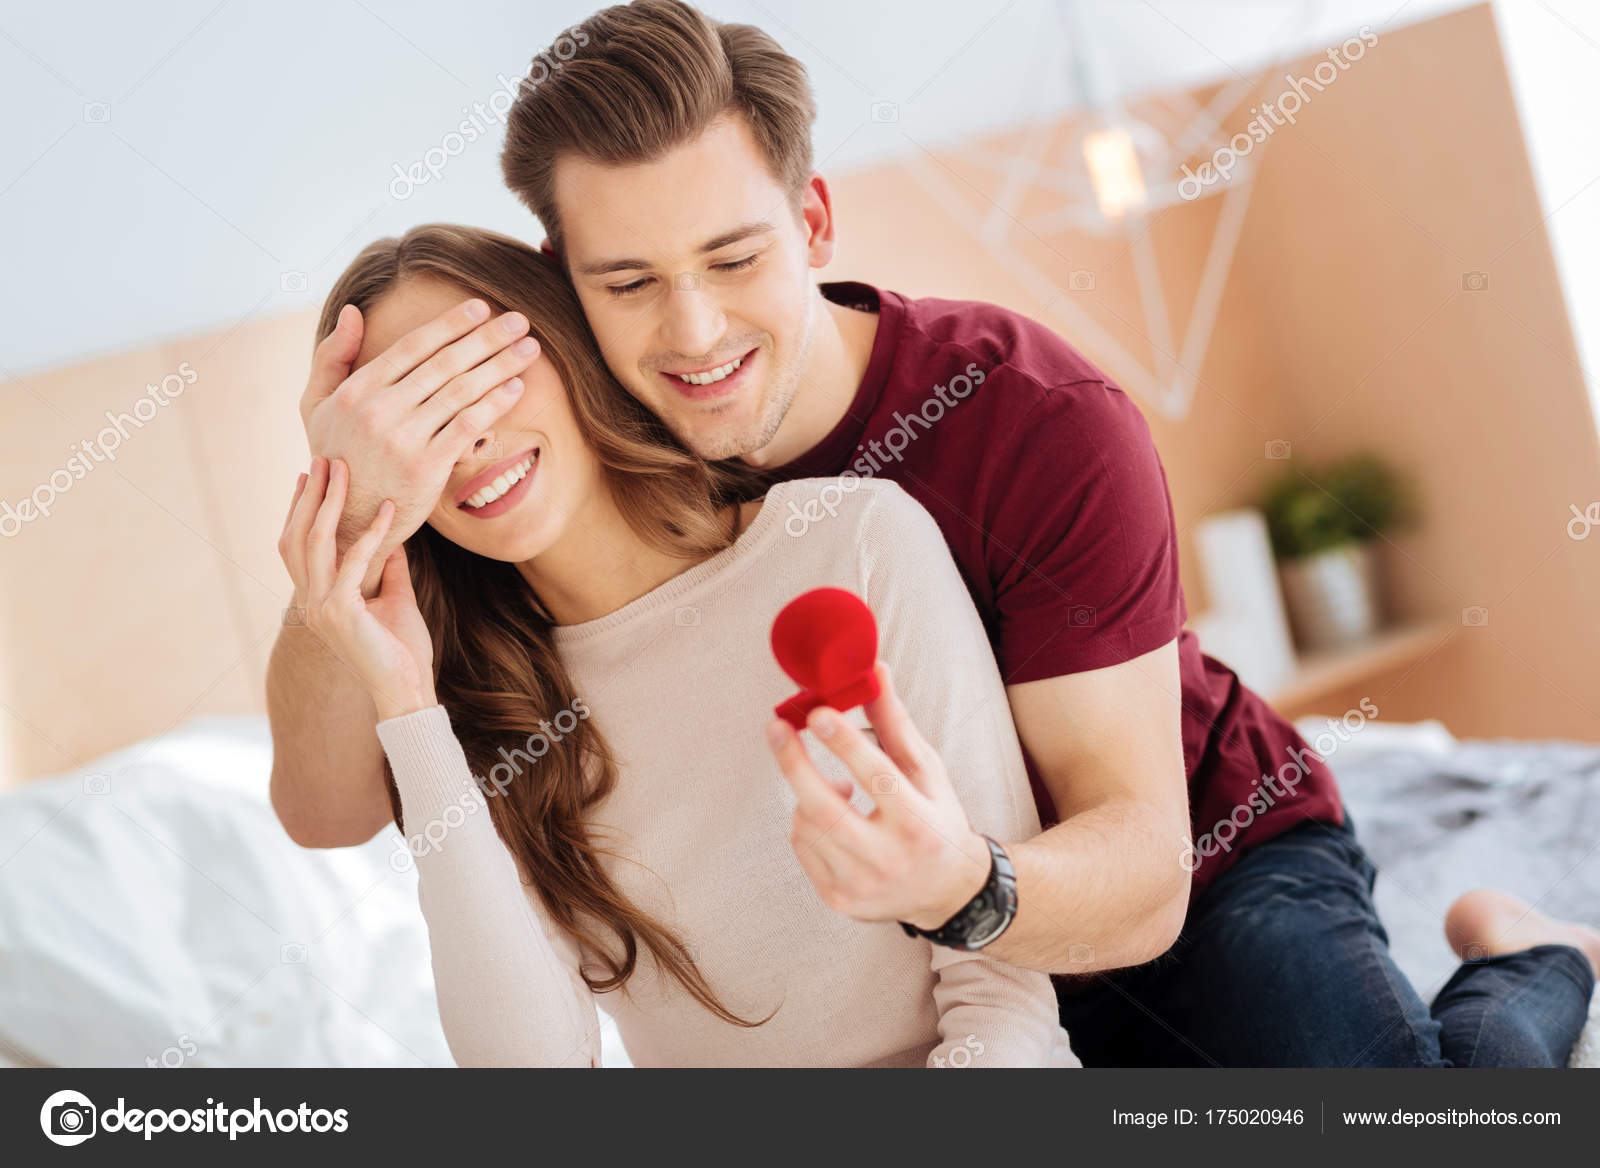 Romantic gentleman surprising his girlfriend with proposal Stock ...